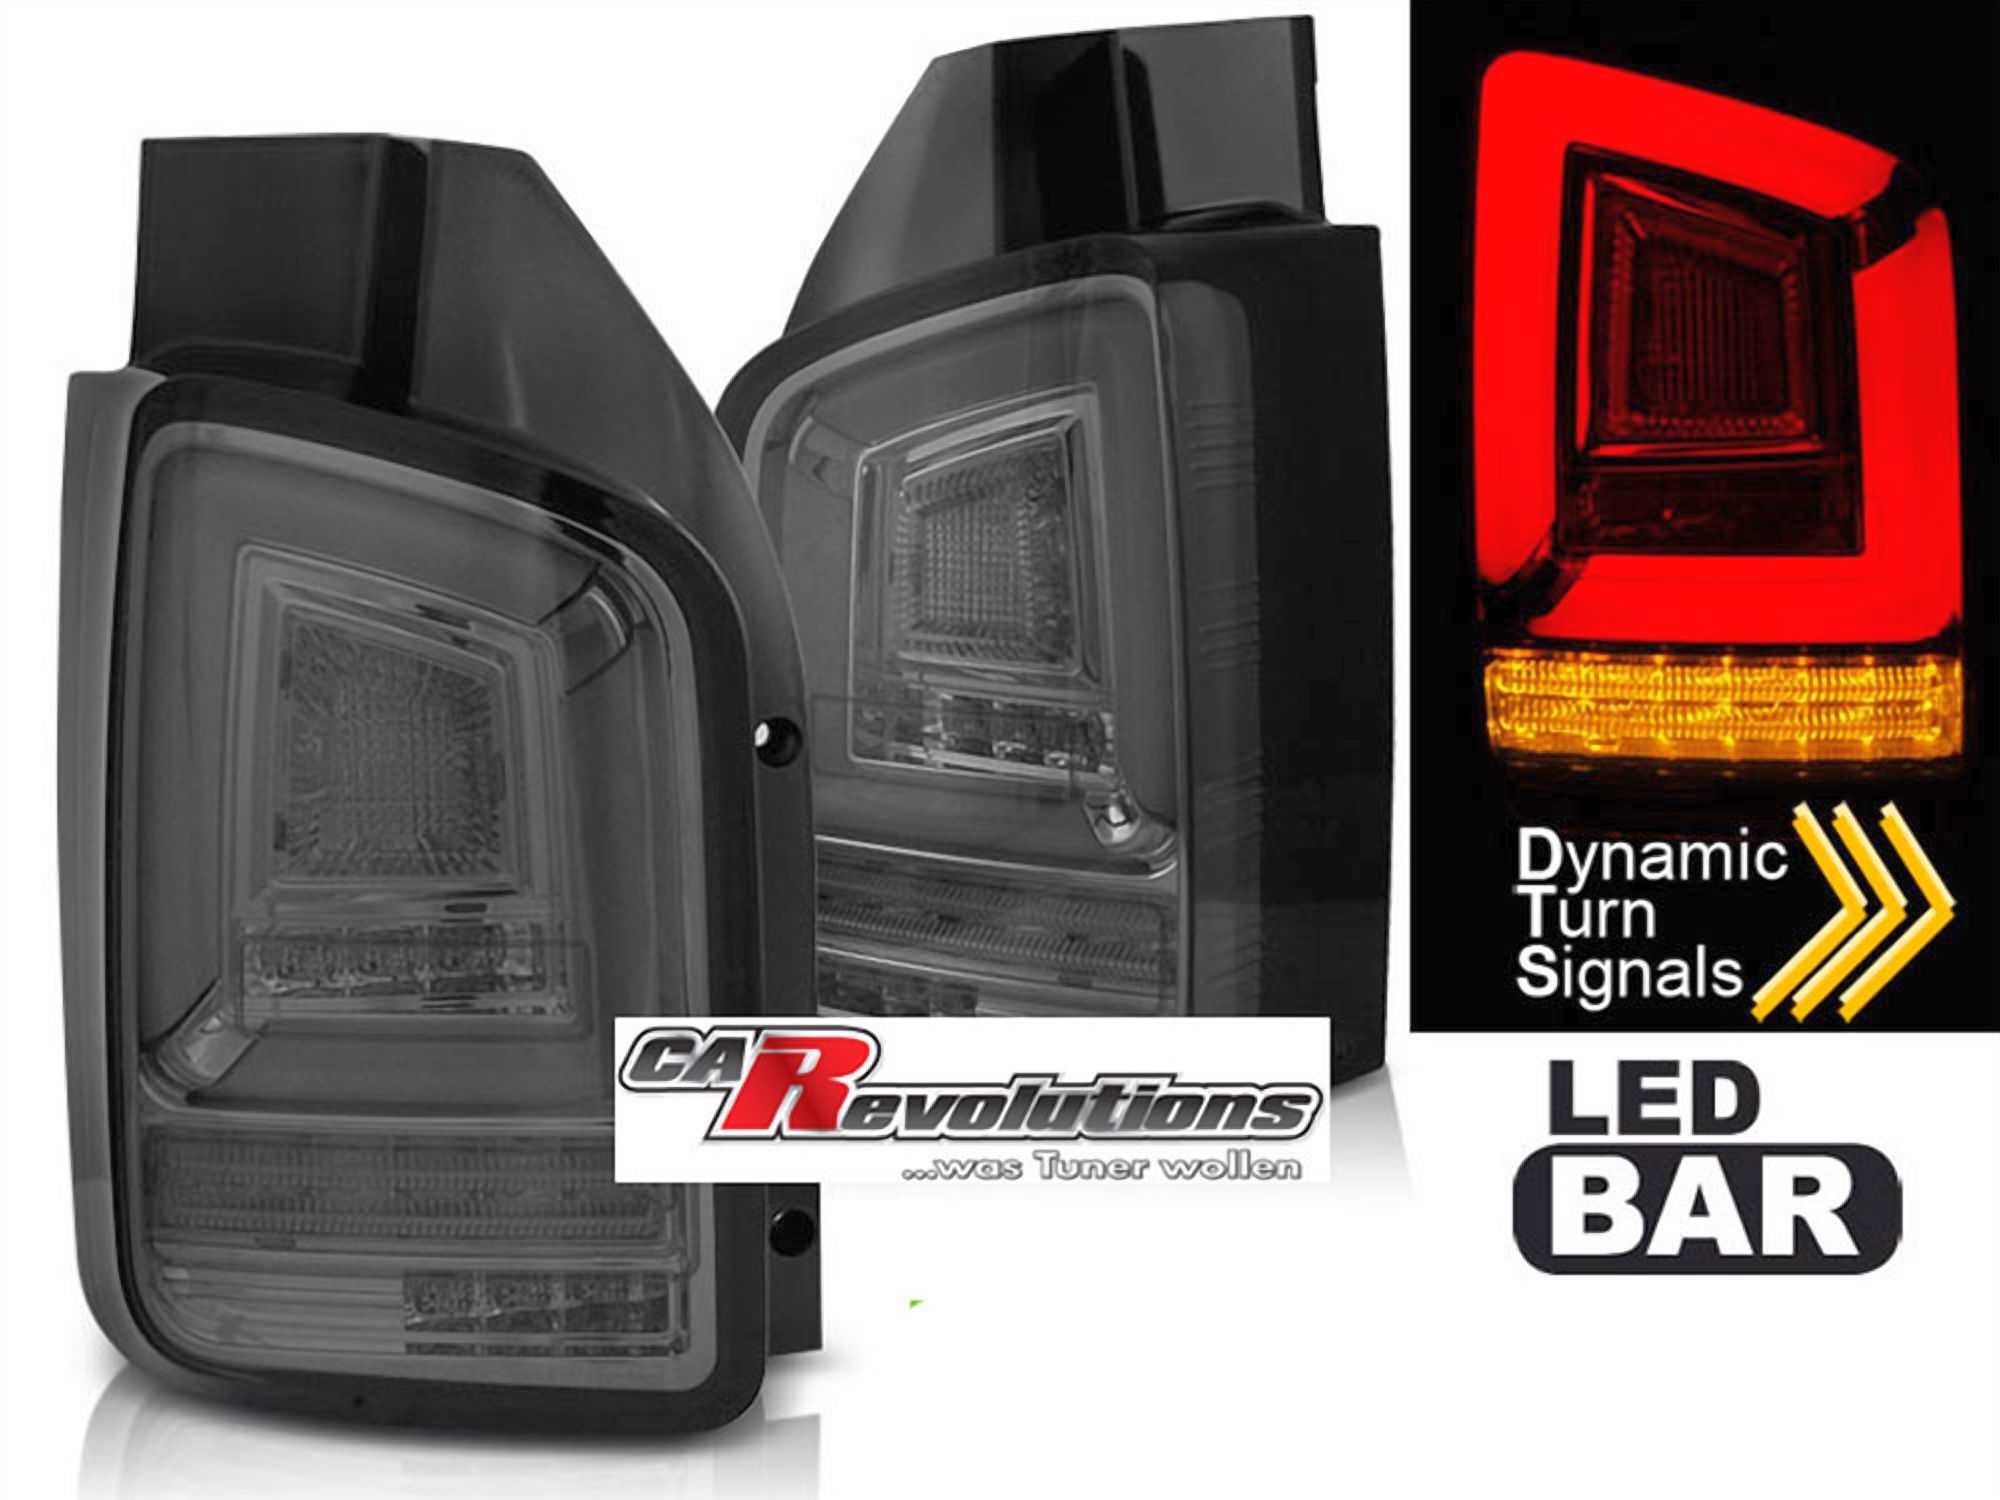 Led dynamische Blinker LightBar Rückleuchten in rauchglas für VW T5 GP  2010-2015, Für VW T5.2 GP, Für VW T5, Für VW, Beleuchtung